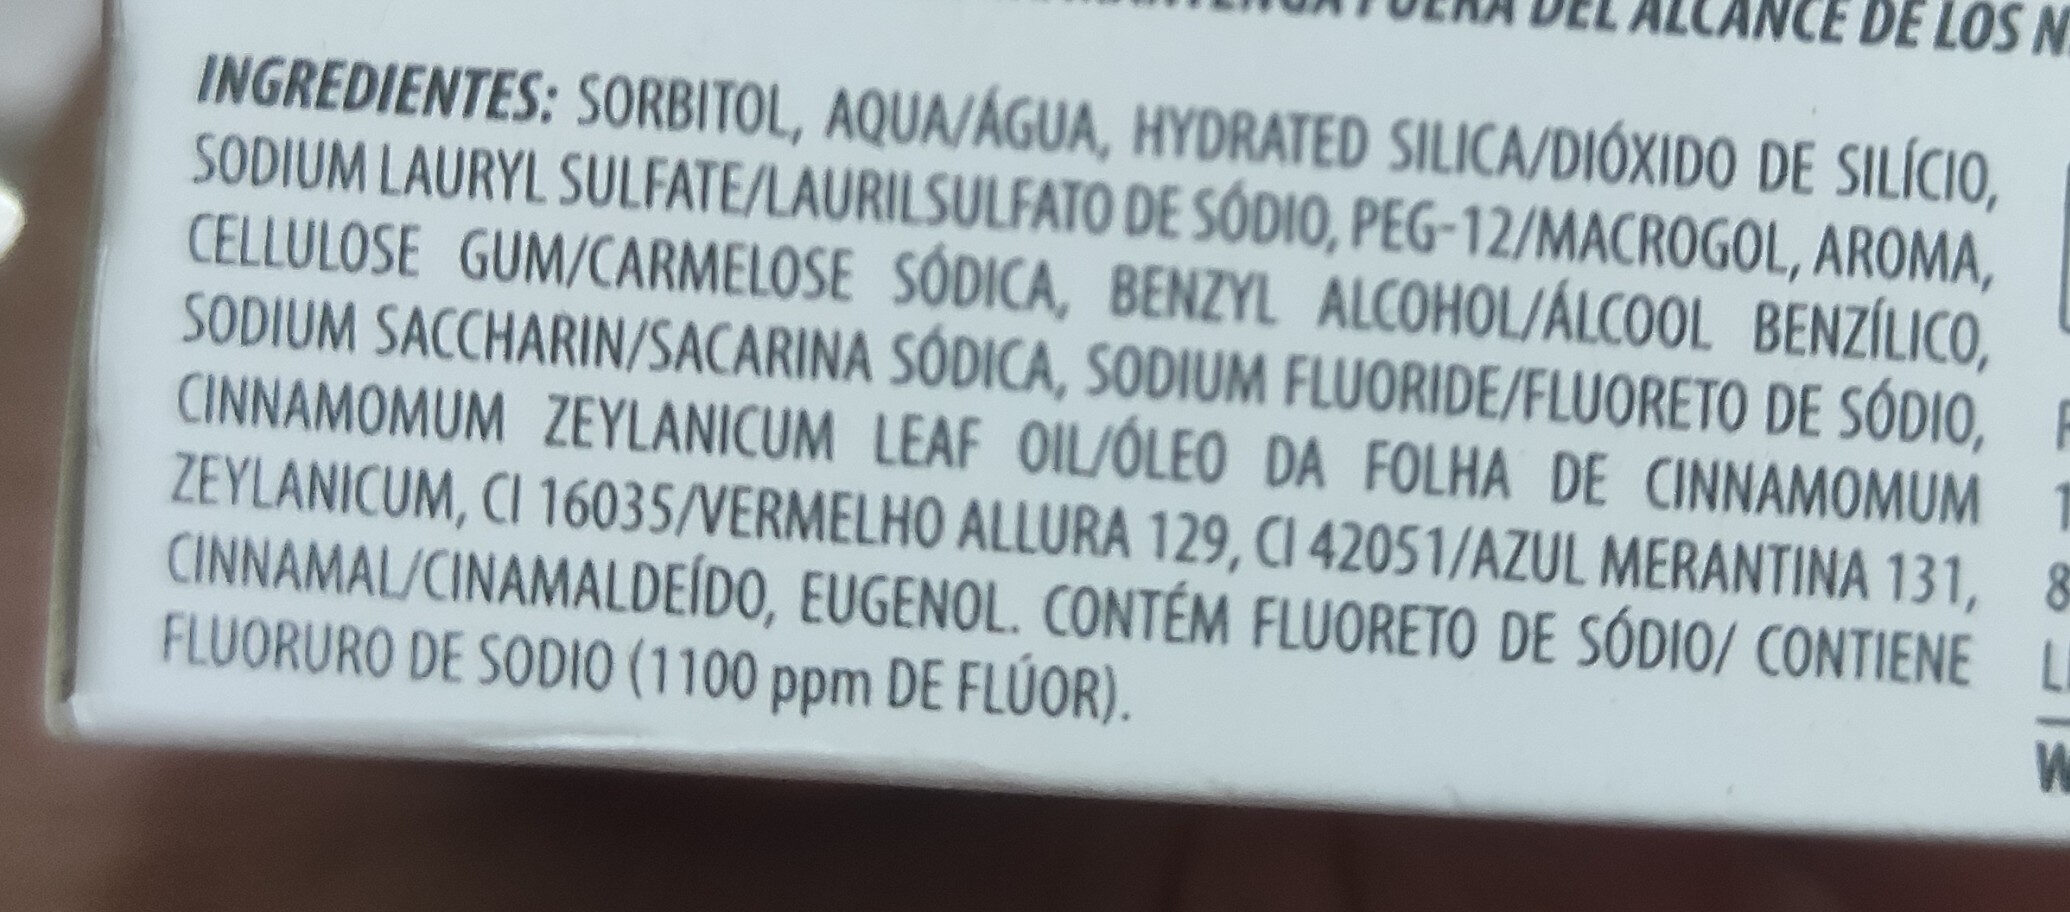 Creme Dental Natural Extracts Açaí e Frutas Vermelhas - Inhaltsstoffe - pt